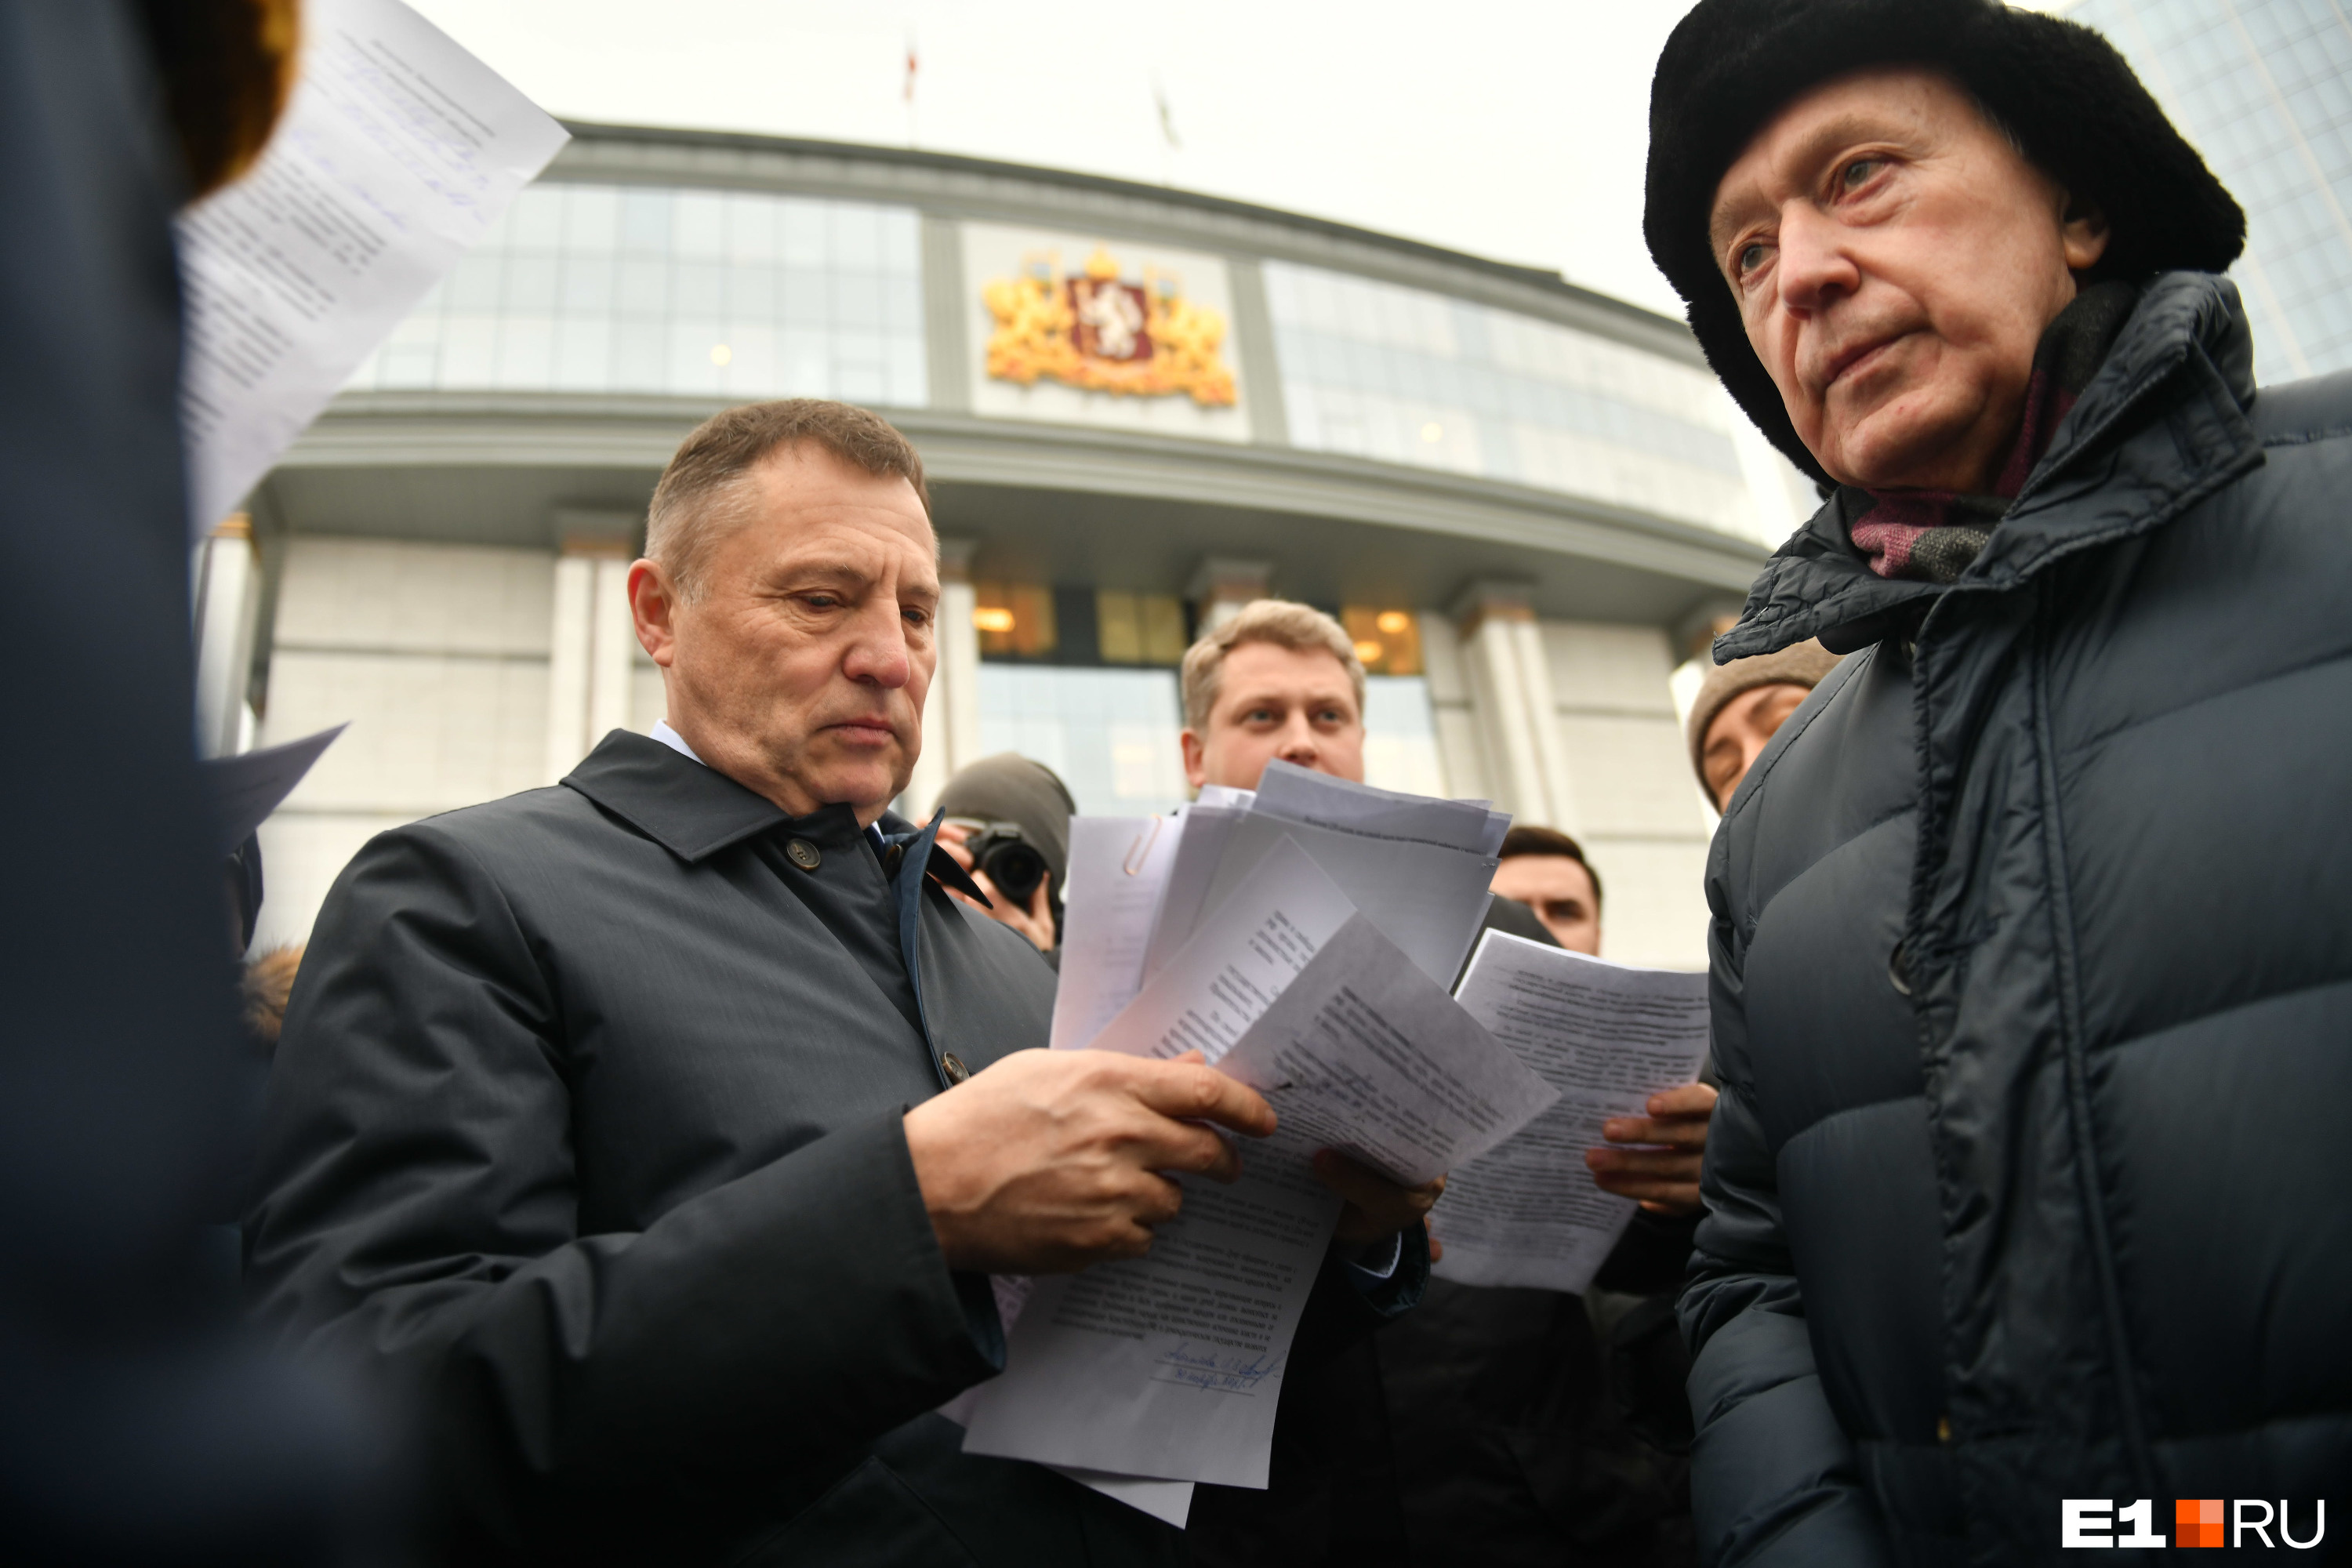 Еще пару лет назад Вячеслав Вегнер ратовал за возвращение прямых выборов мэра, а сегодня грозит «ставить врагов к стенке»